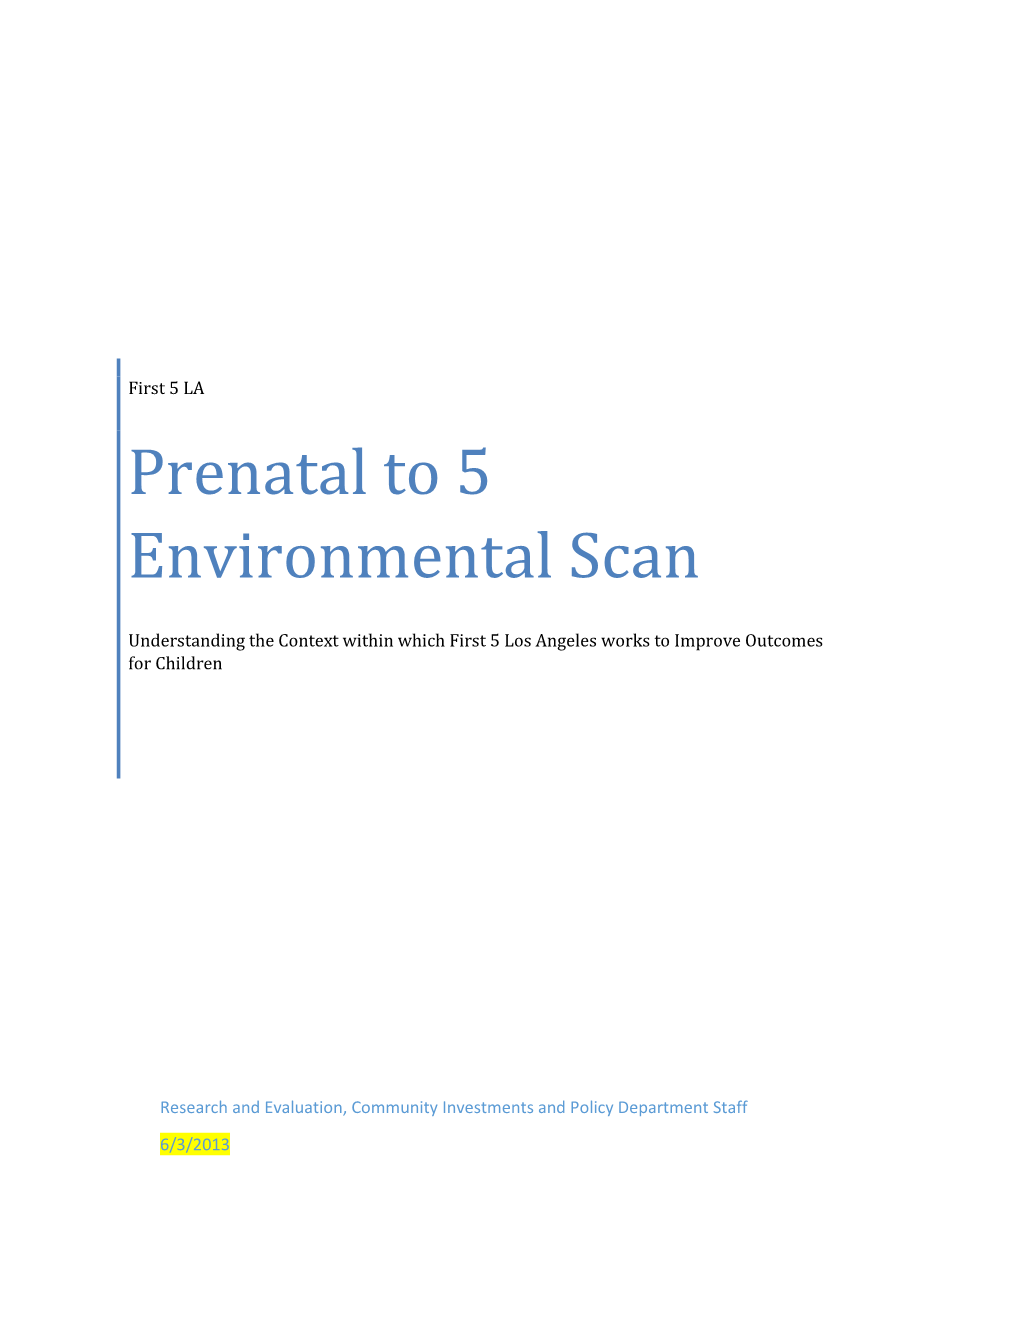 Prenatal to 5 Environmental Scan